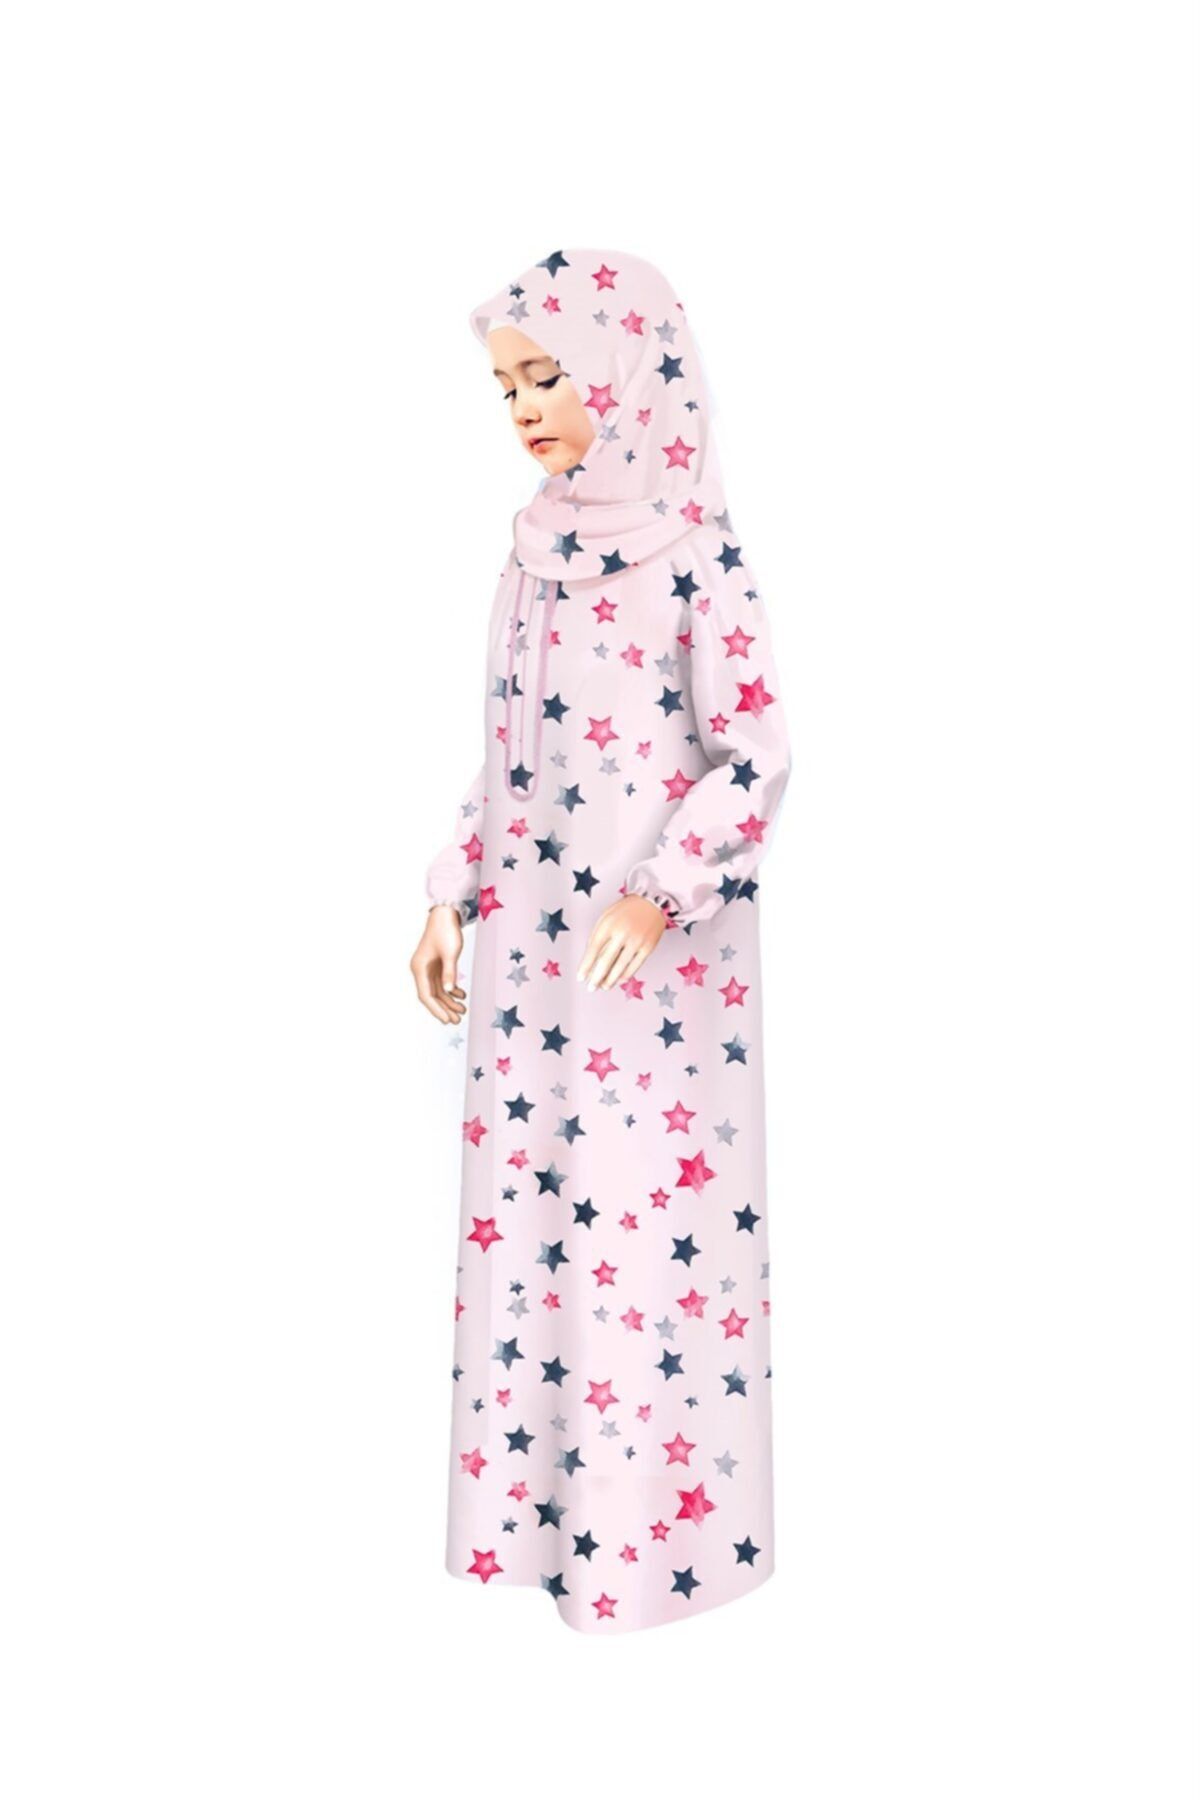 Liyavera Kız Çocuk Namaz Elbisesi Pembe Renkli Fermuarlı Yıldız Desenli 875